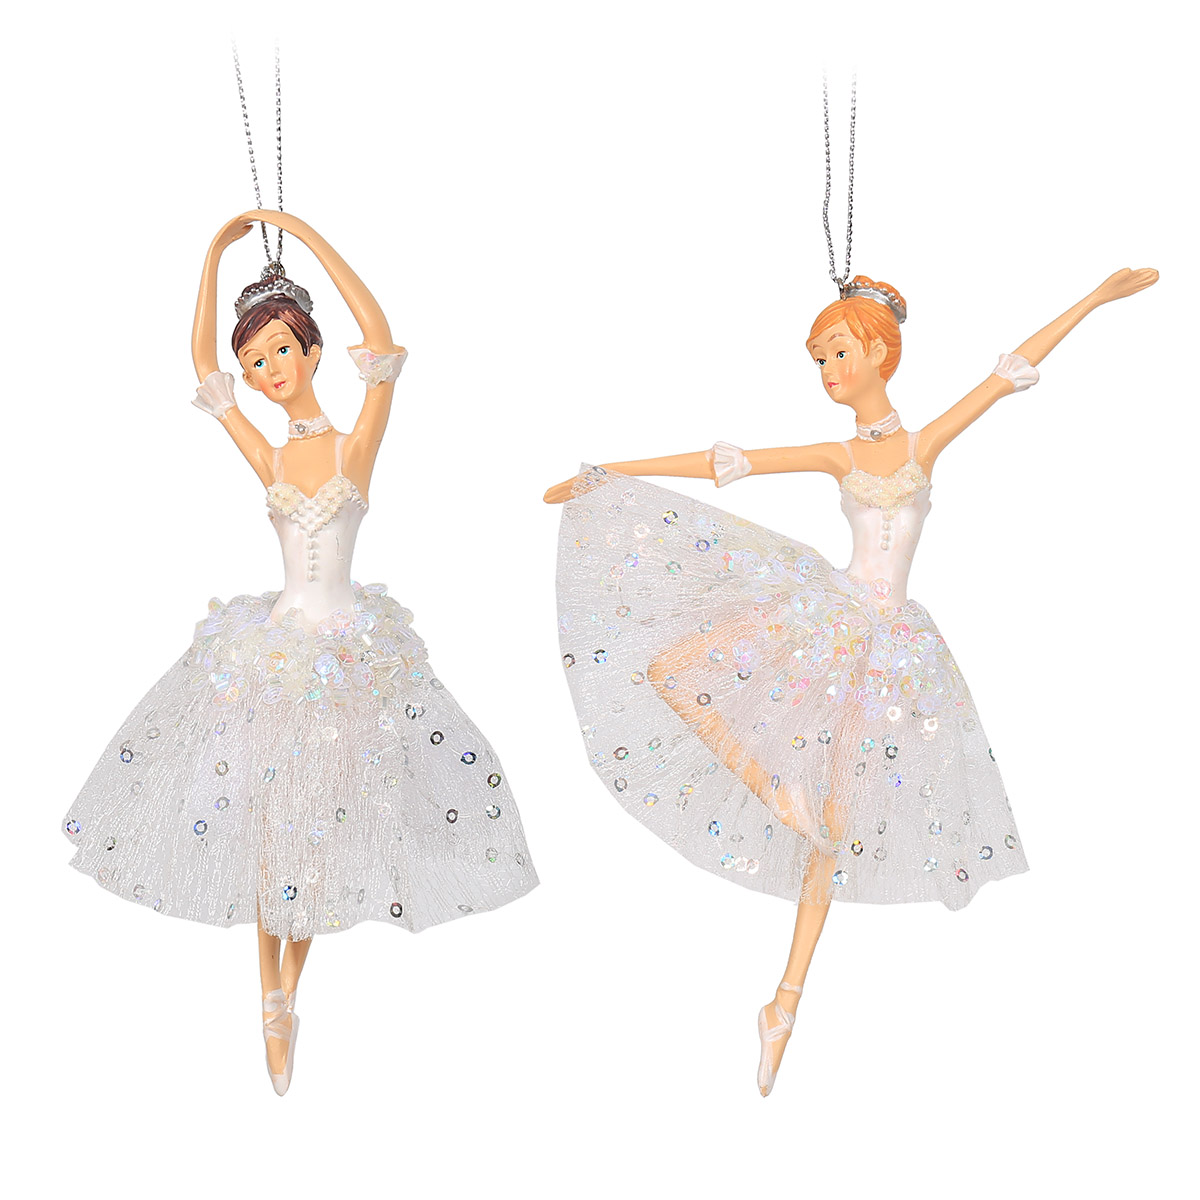 Новогодние игрушки Балет - балерины, балетные пары, пуанты выбрать в магазине уральские-газоны.рф